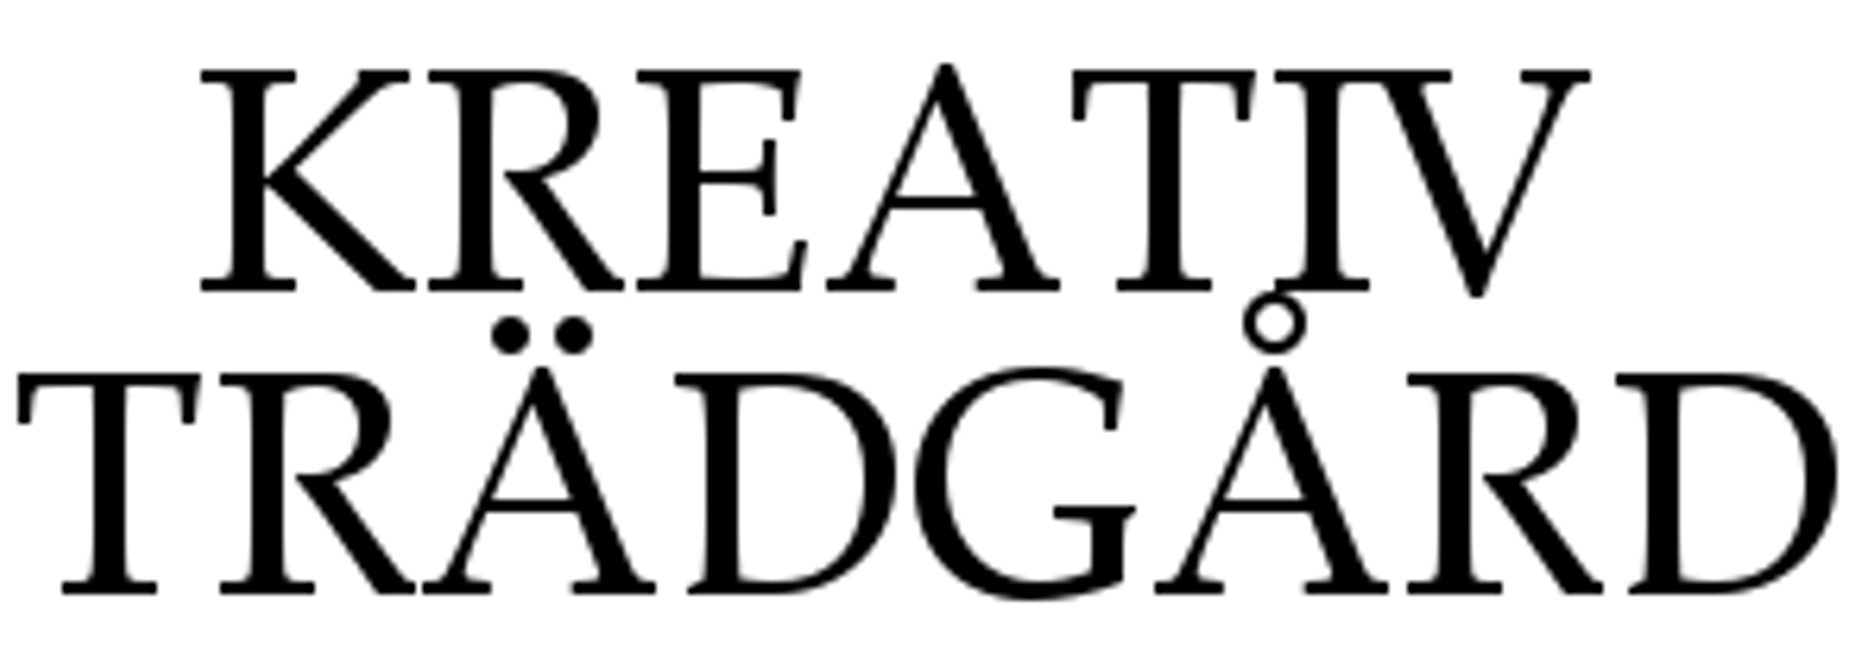 kreativtradgard-logo